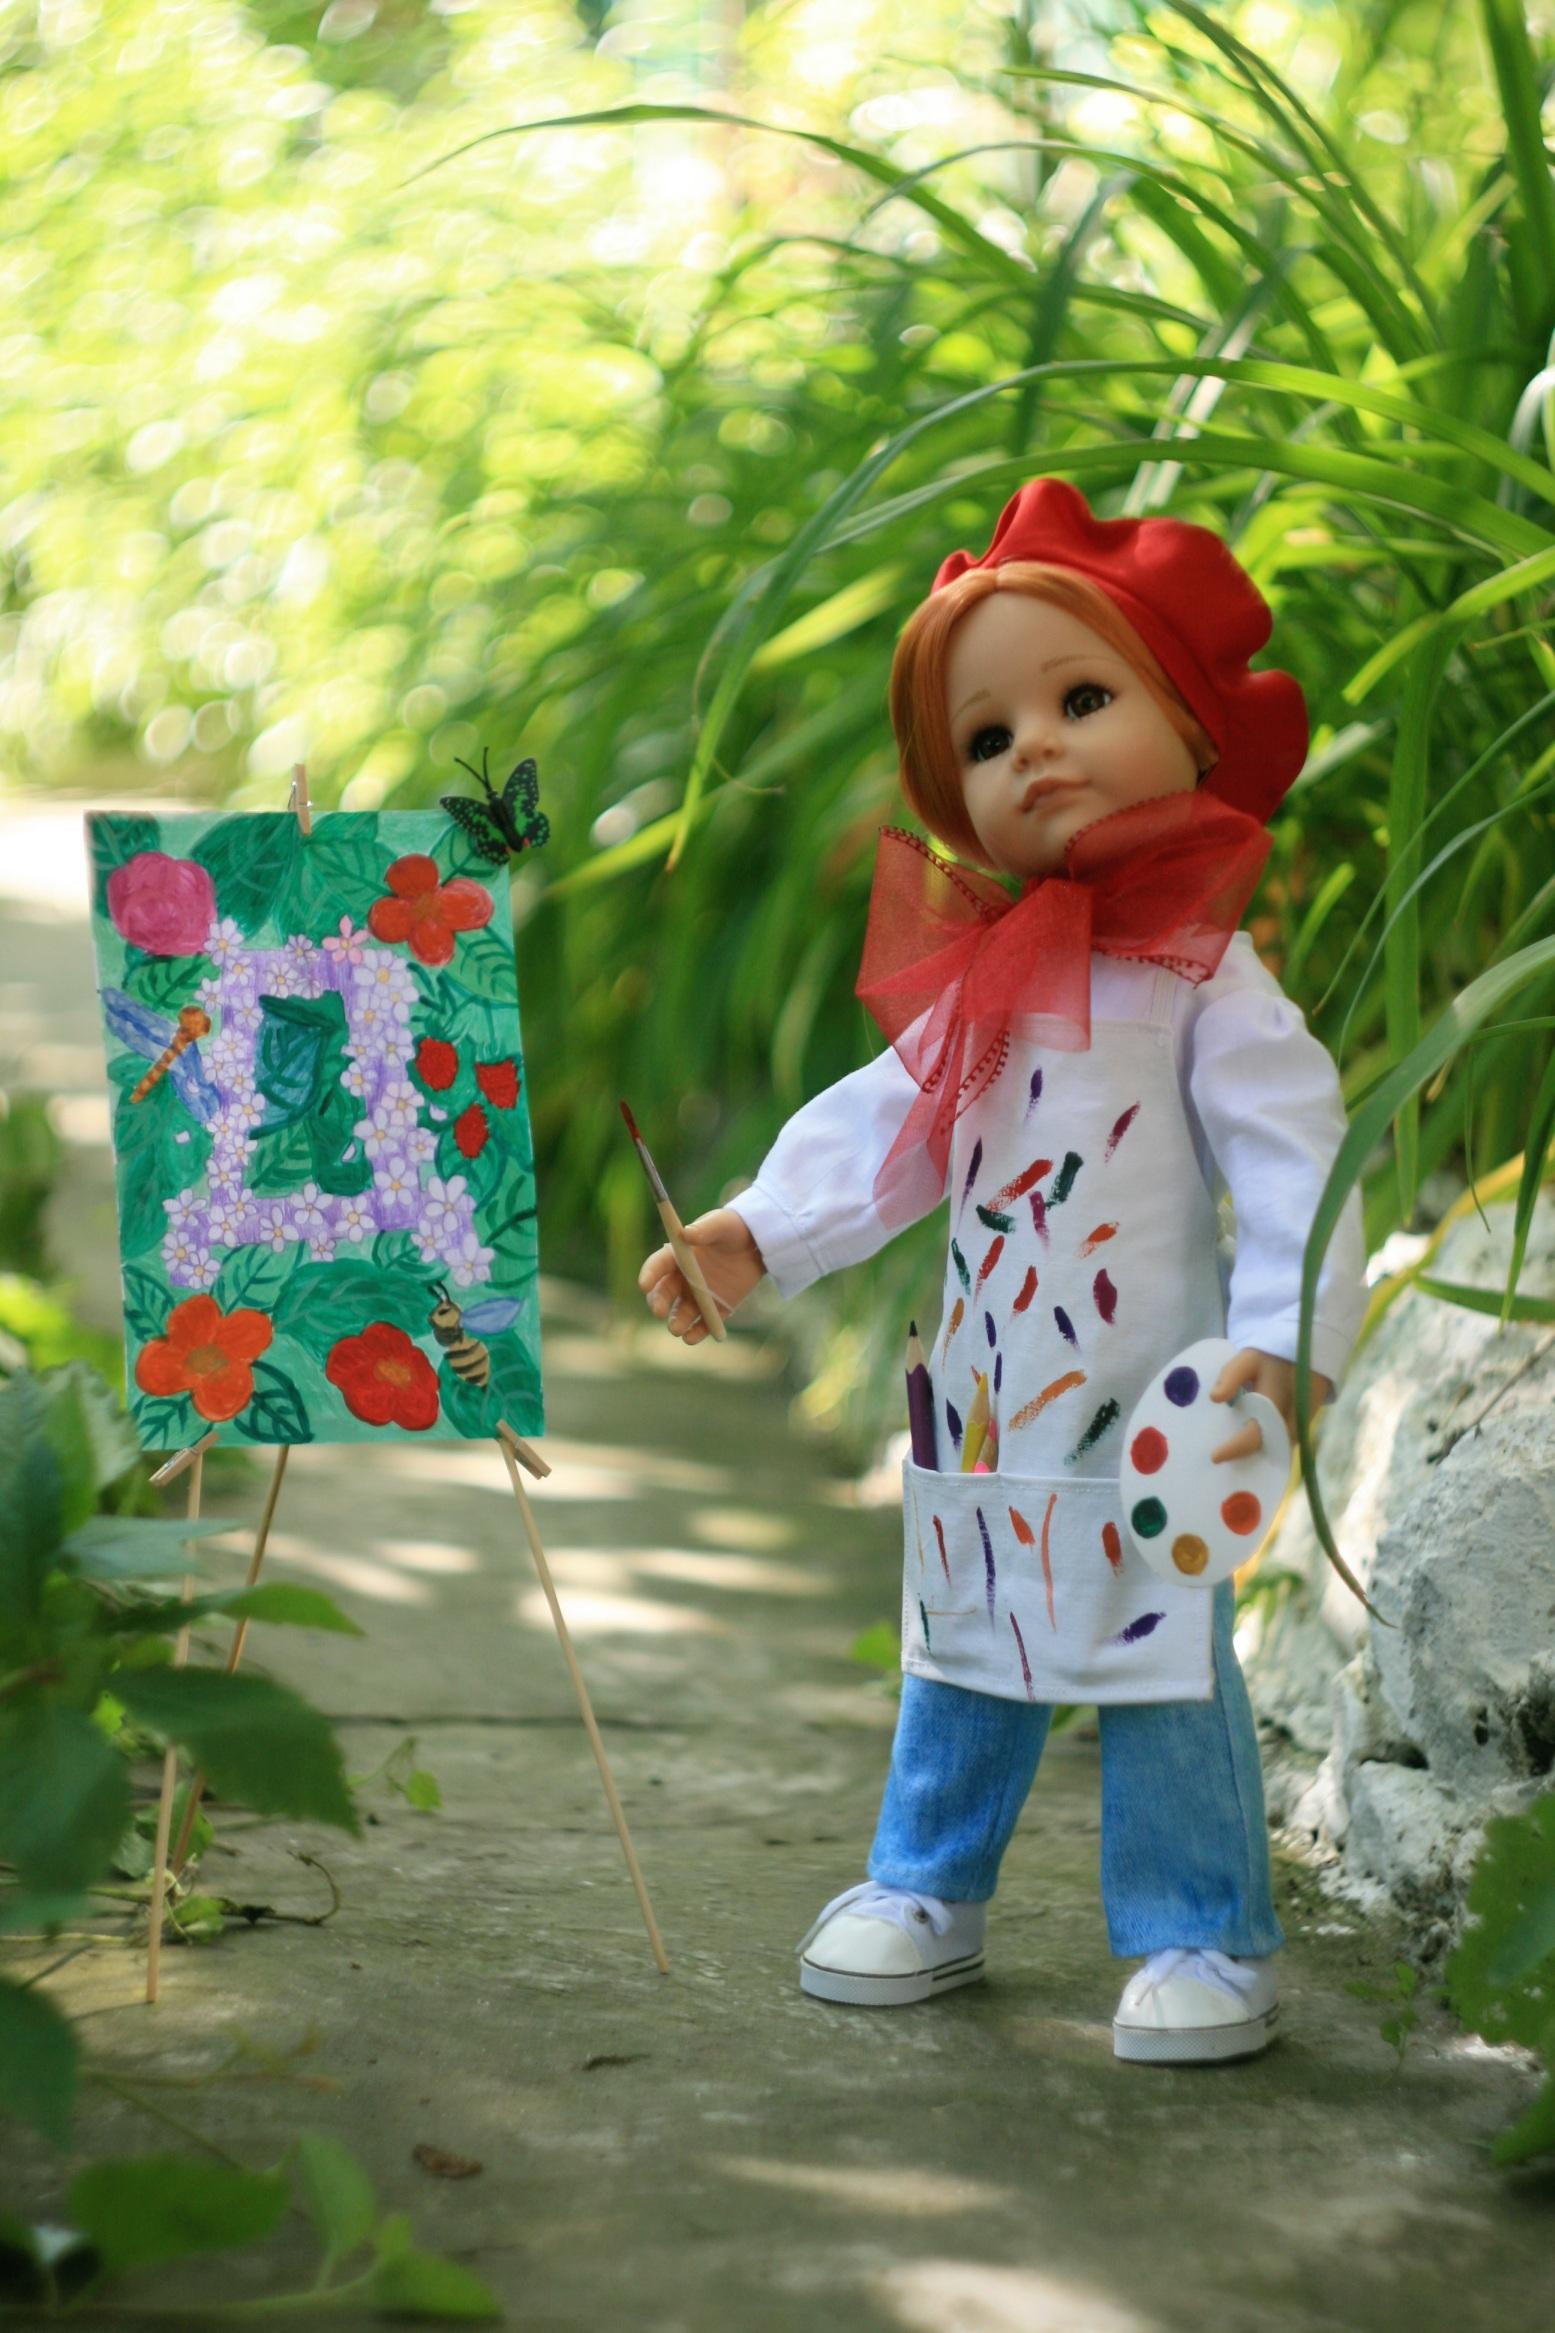 Детский фотоконкурс от Подснежников "Кукольная азбука"